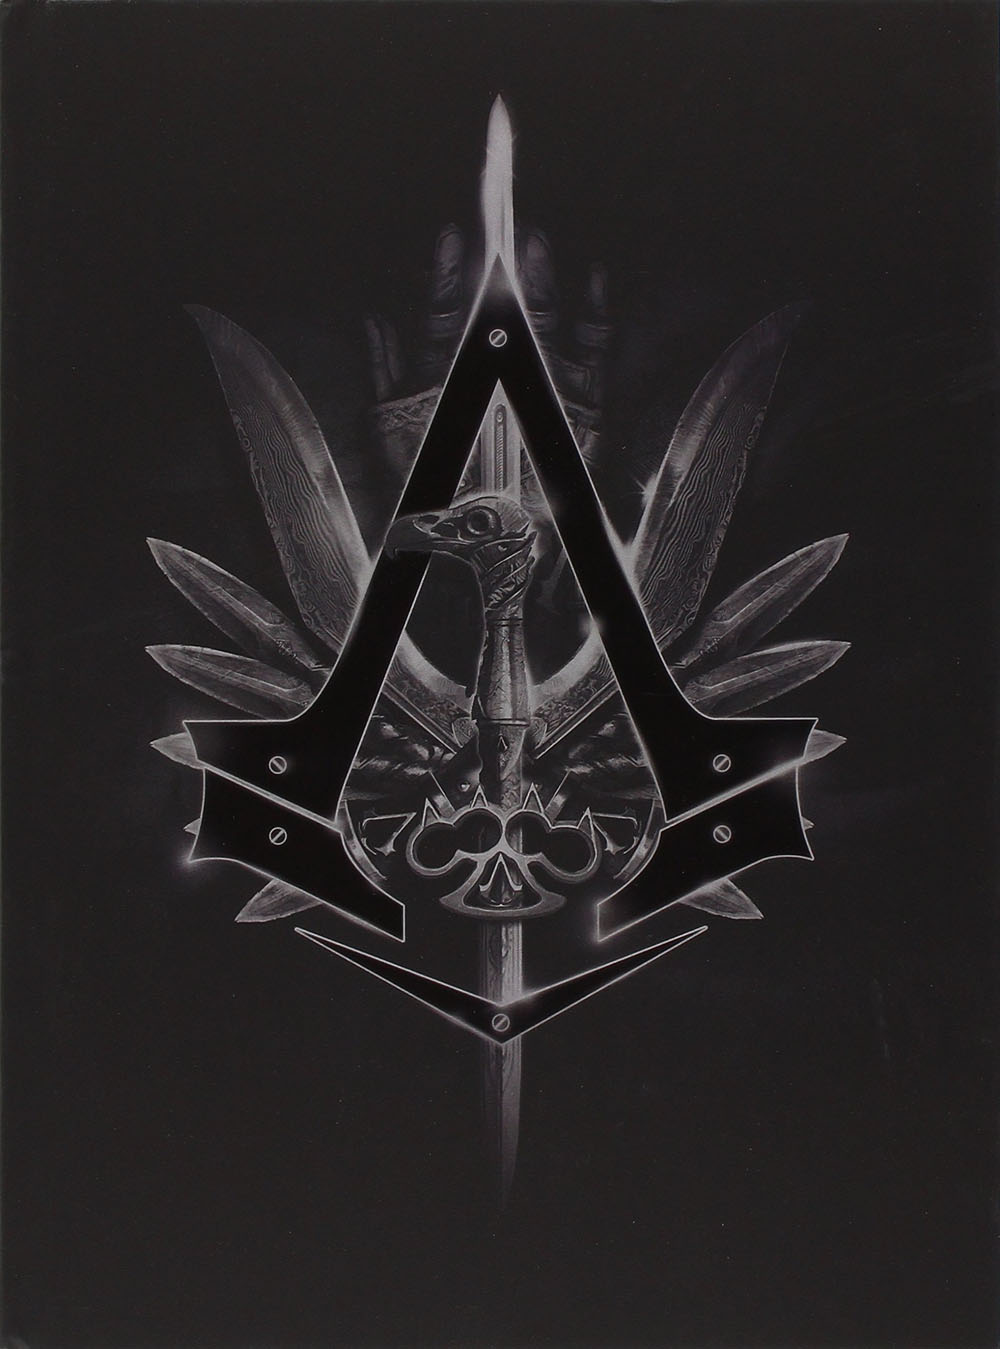 Libri Assassin's Creed - Syndicate - Edizione Da Collezione (Guida Strategica) NUOVO SIGILLATO, EDIZIONE DEL 23/10/2015 SUBITO DISPONIBILE